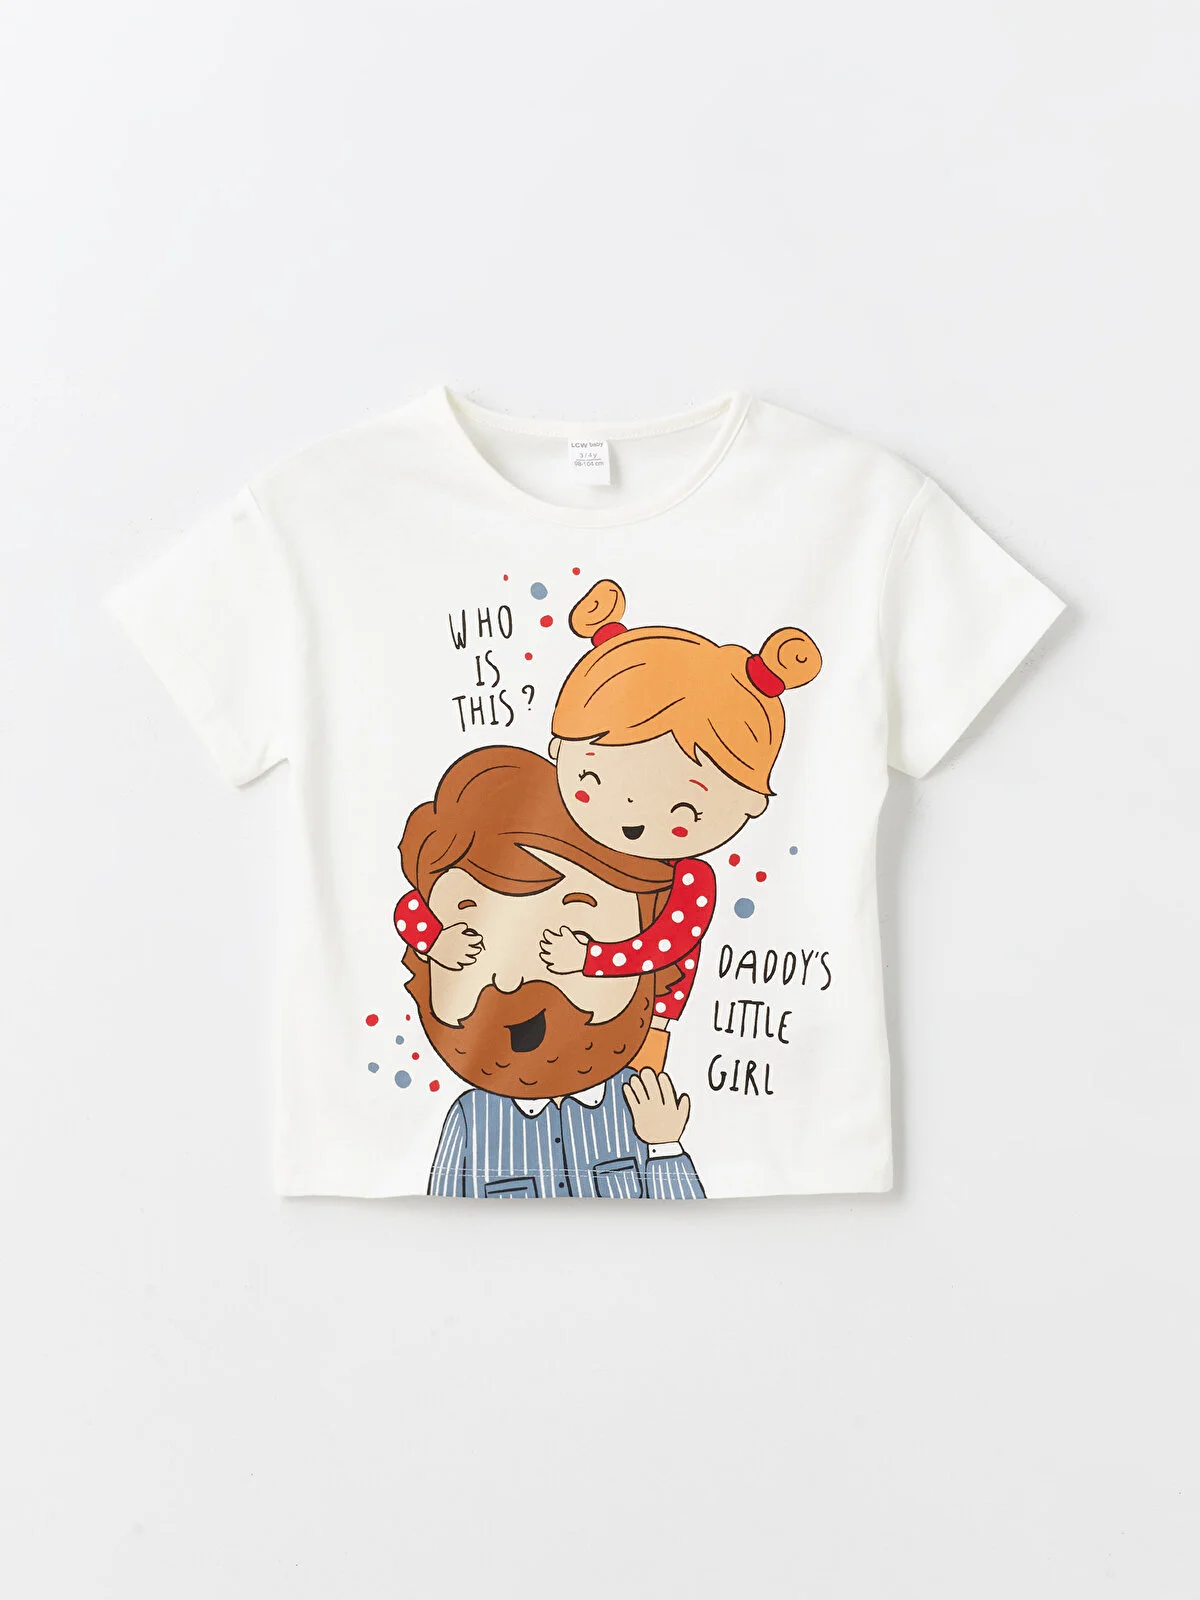 Daddy's Little Girl T-shirt